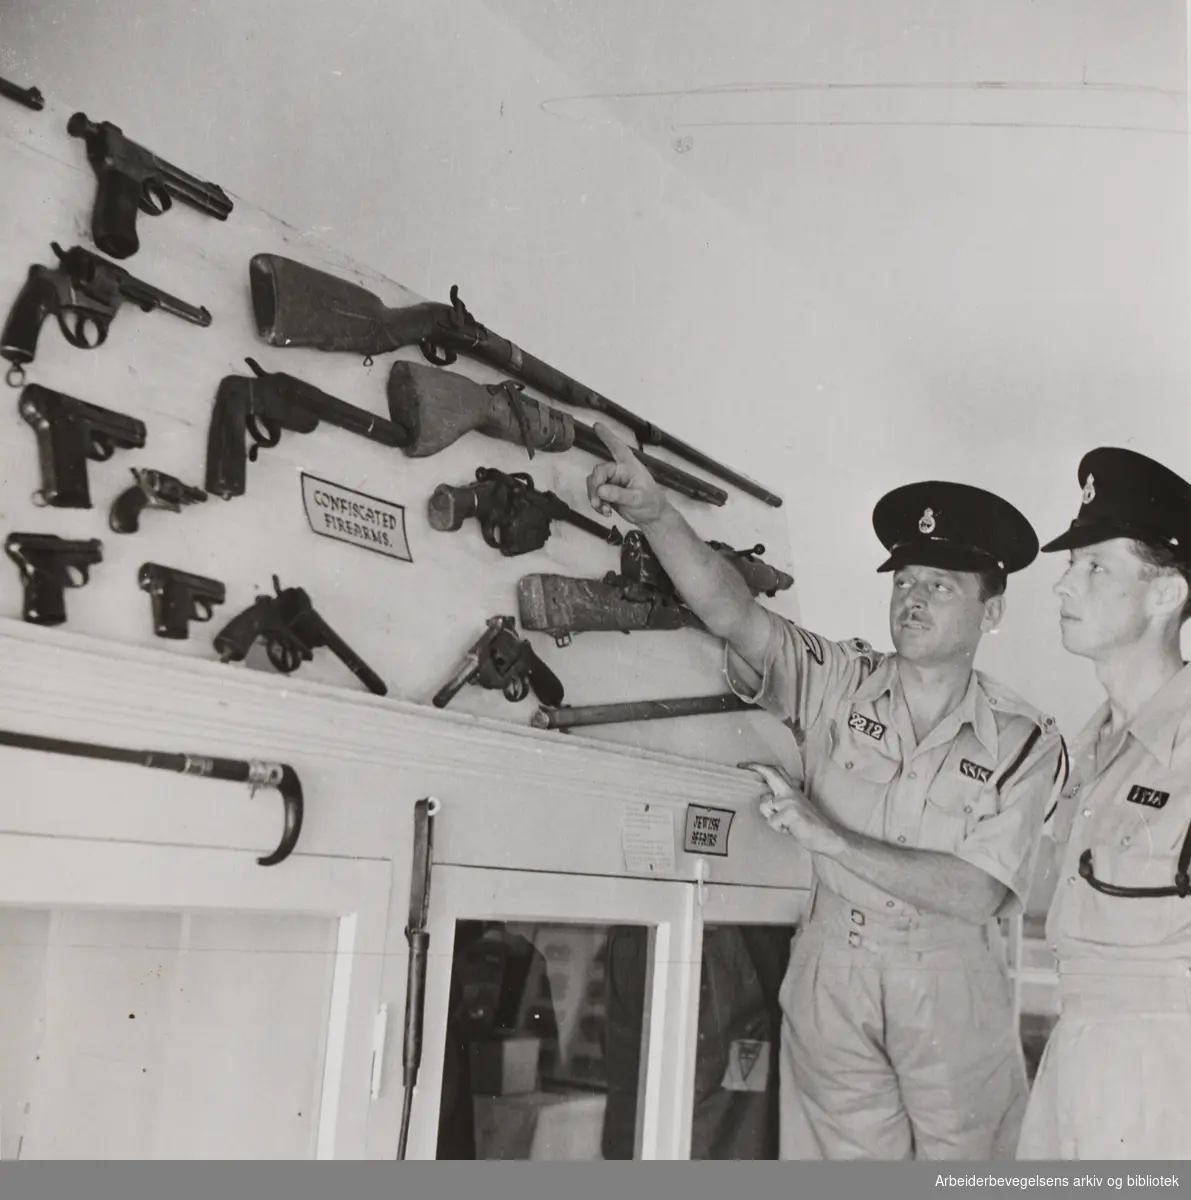 Palestina 1947. Bildetekst Arbeiderbladet: "Politiet i Palestina har etterhvert fått en anseelig samling konfiskerete våpen. En sersjant viser noen våpentyper til en ny mann i politistyrken. "